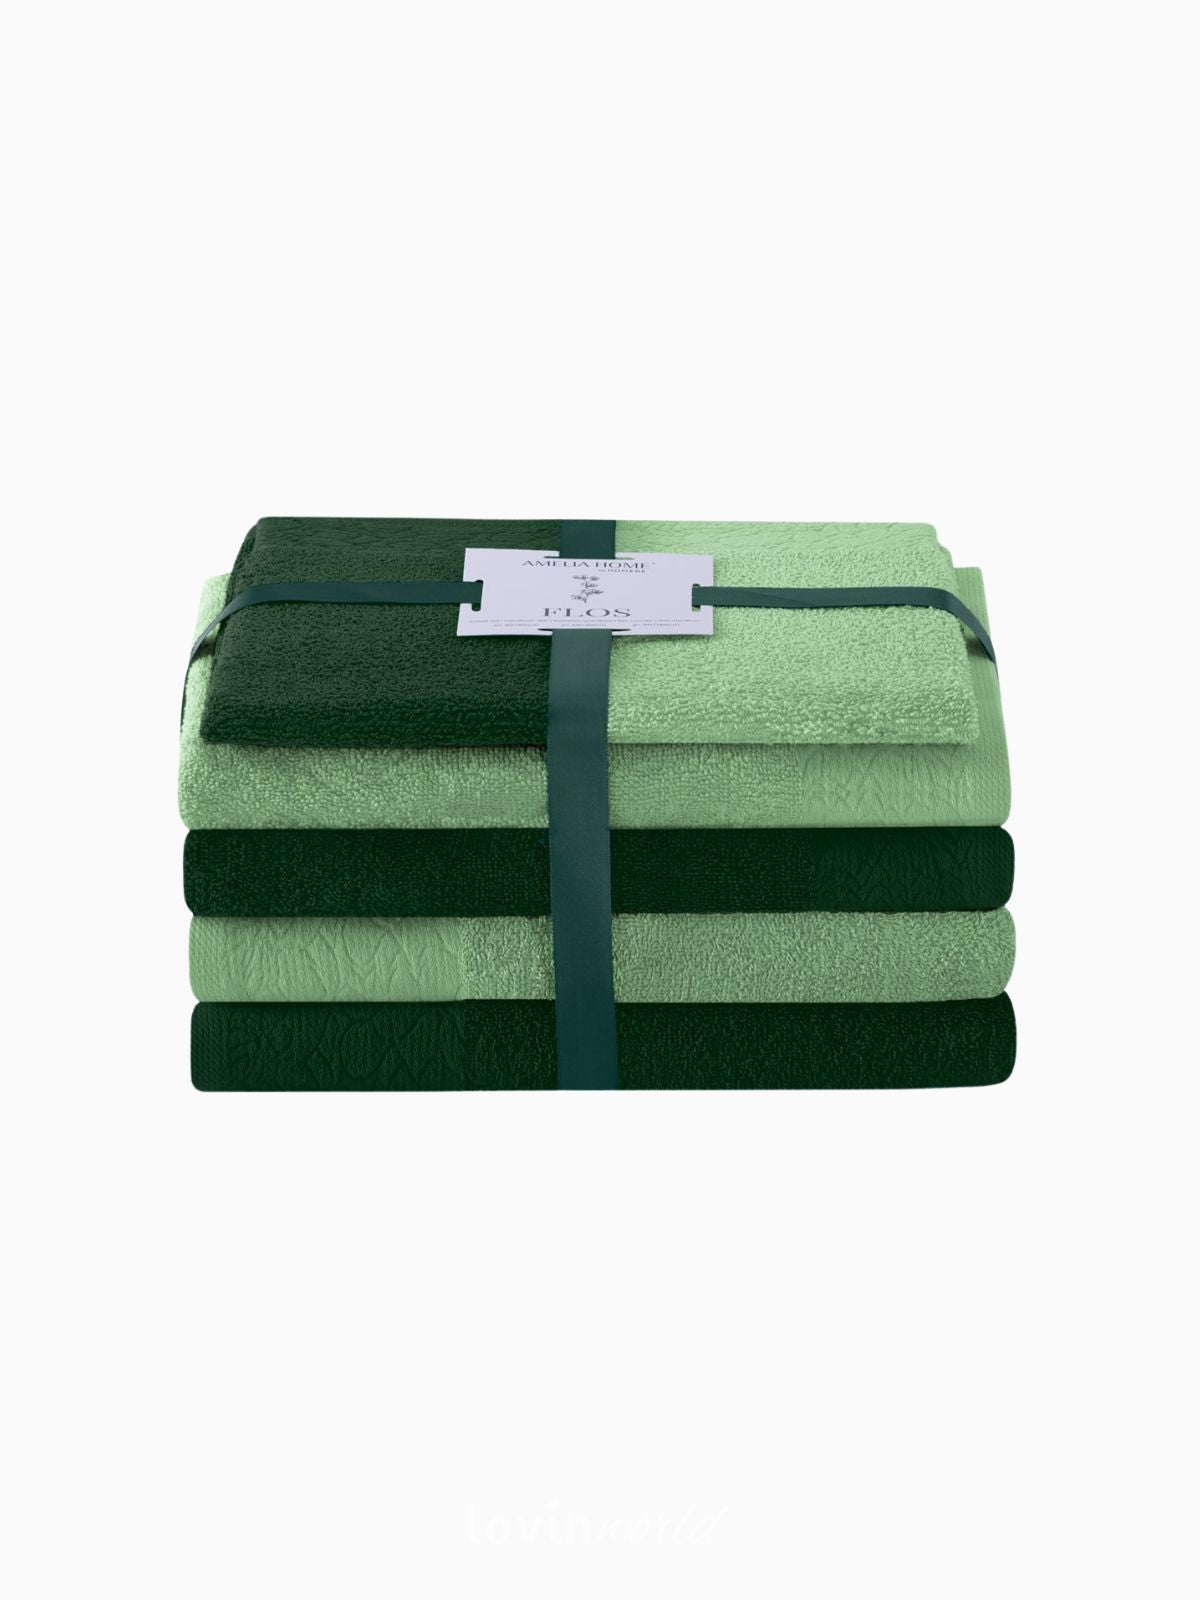 Set 6 Asciugamani da bagno Flos in 100% cotone, colore verde chiaro e scuro-1